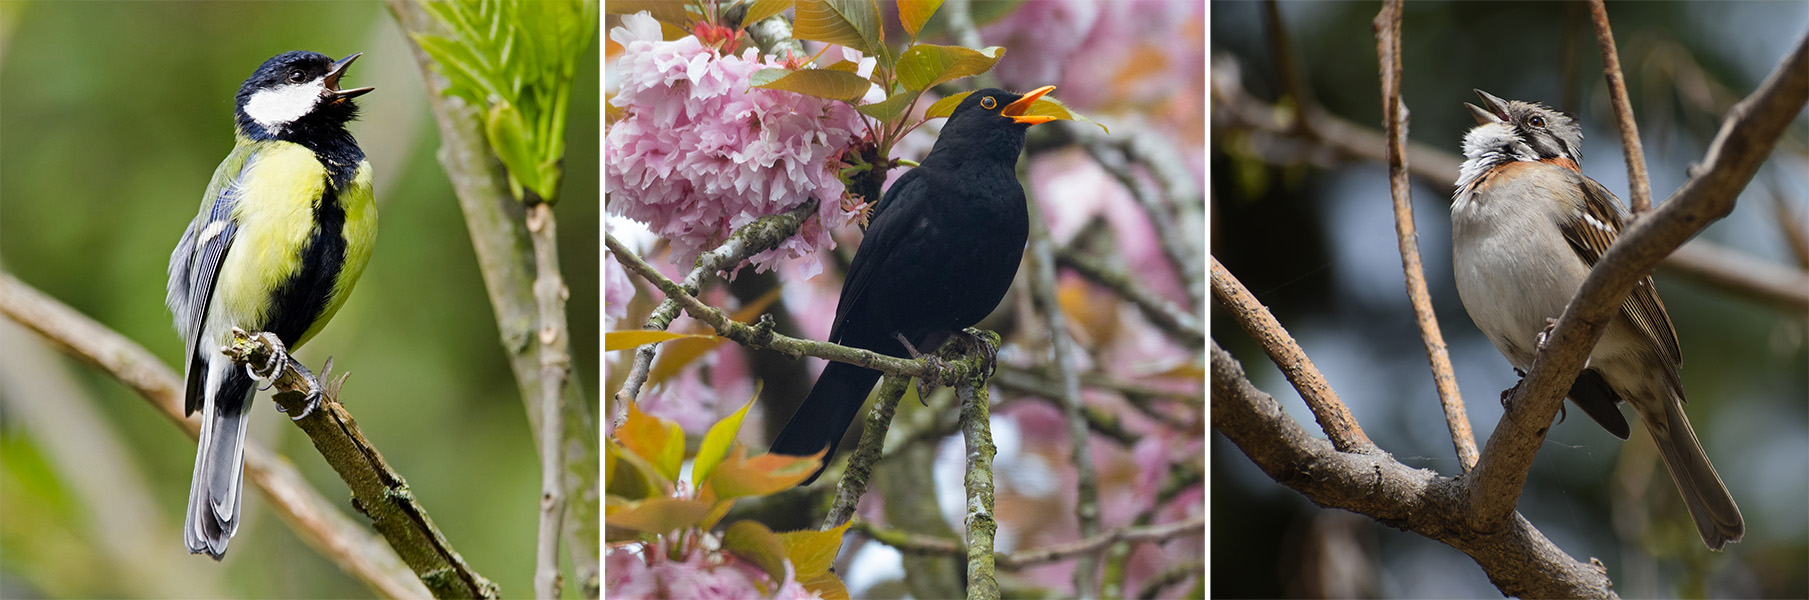 Tres imágenes de aves: la primera es un pájaro con plumaje negro, blanco y amarillo; la segunda es un ave completamente negra con pico color naranja; y, la tercera, es un ave de color pardo con pecho blanco.